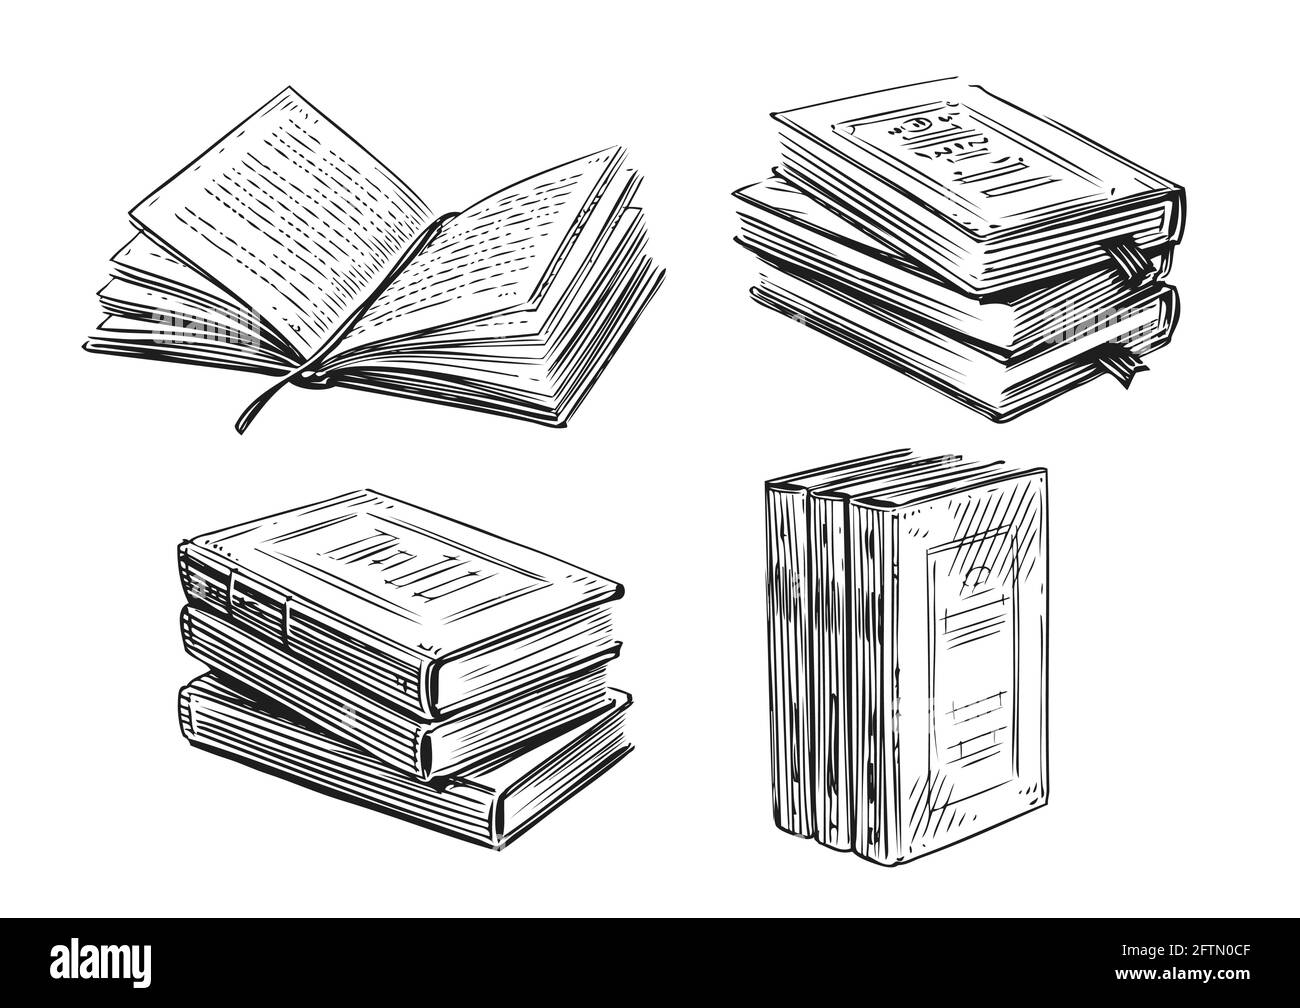 Bücher Skizze. Literatur, Bibliothekskonzept im Vintage-Stil. Handgezeichnete Vektor-Designelemente Stock Vektor